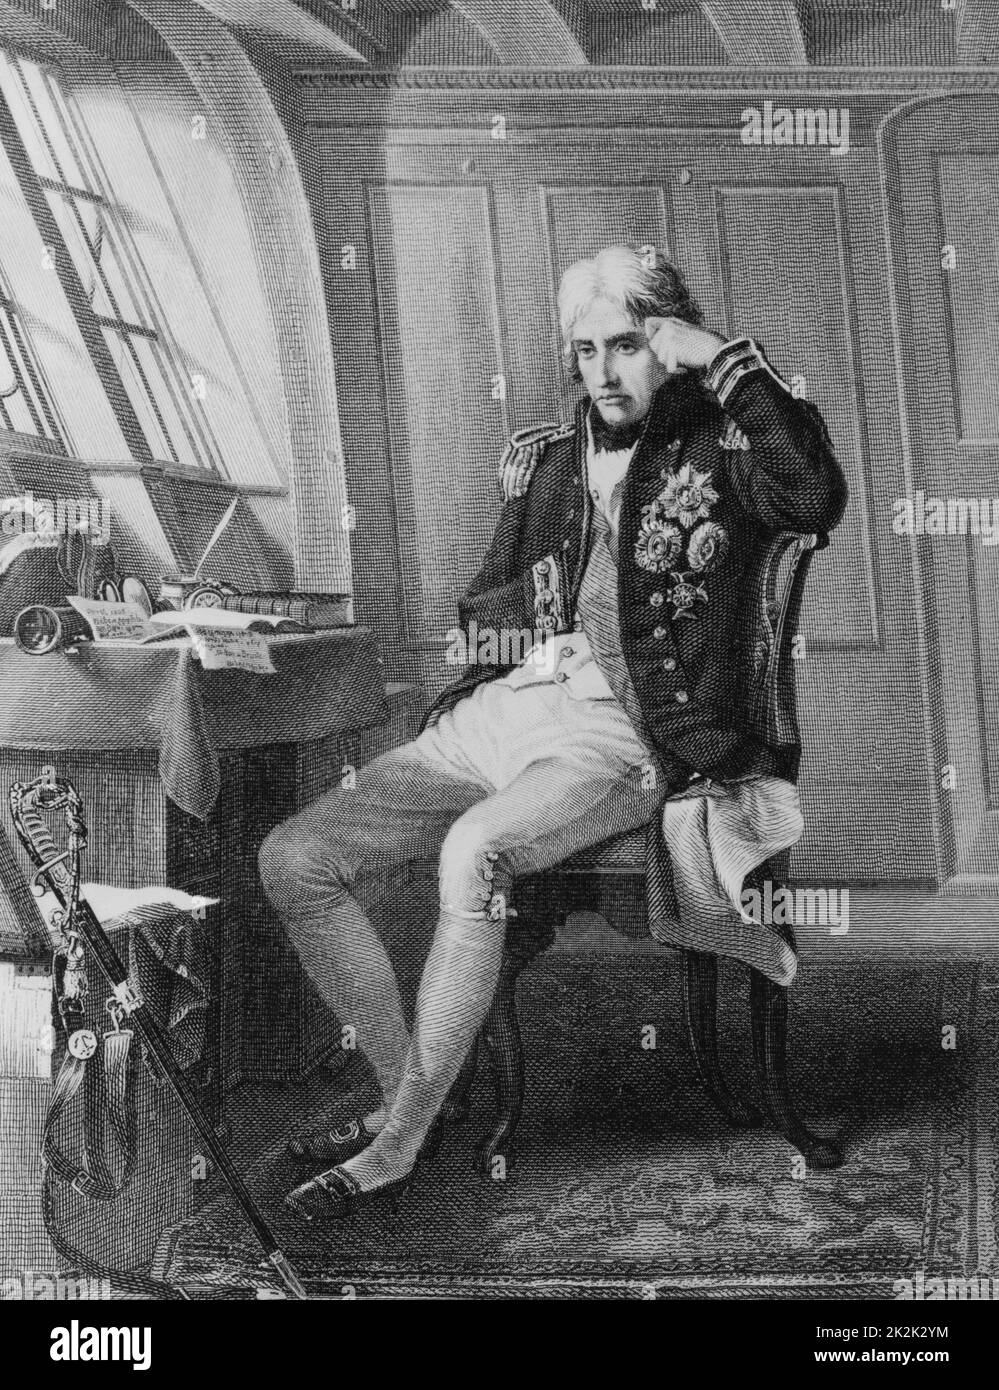 Vice-amiral britannique Horatio Nelson, officier de la Marine royale. Gravure datée de 1873 Banque D'Images